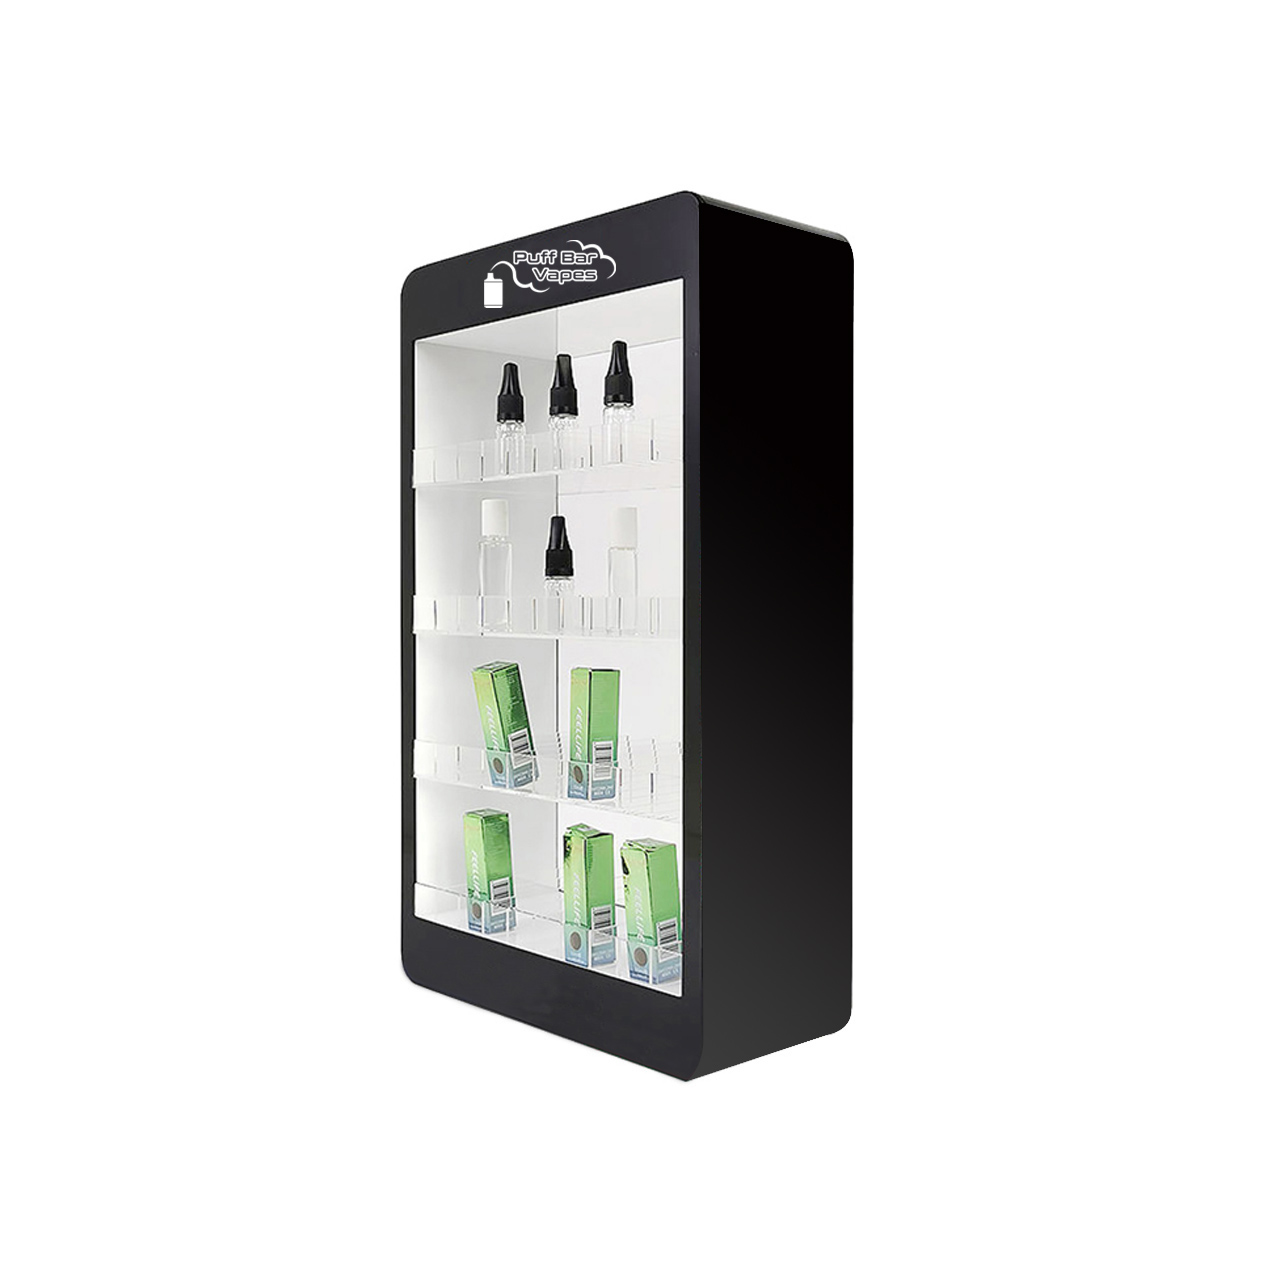 Iimeko zokubonisa kwiVenkile yeVape, i-LED E-Juice/E-Cigarette Display stand